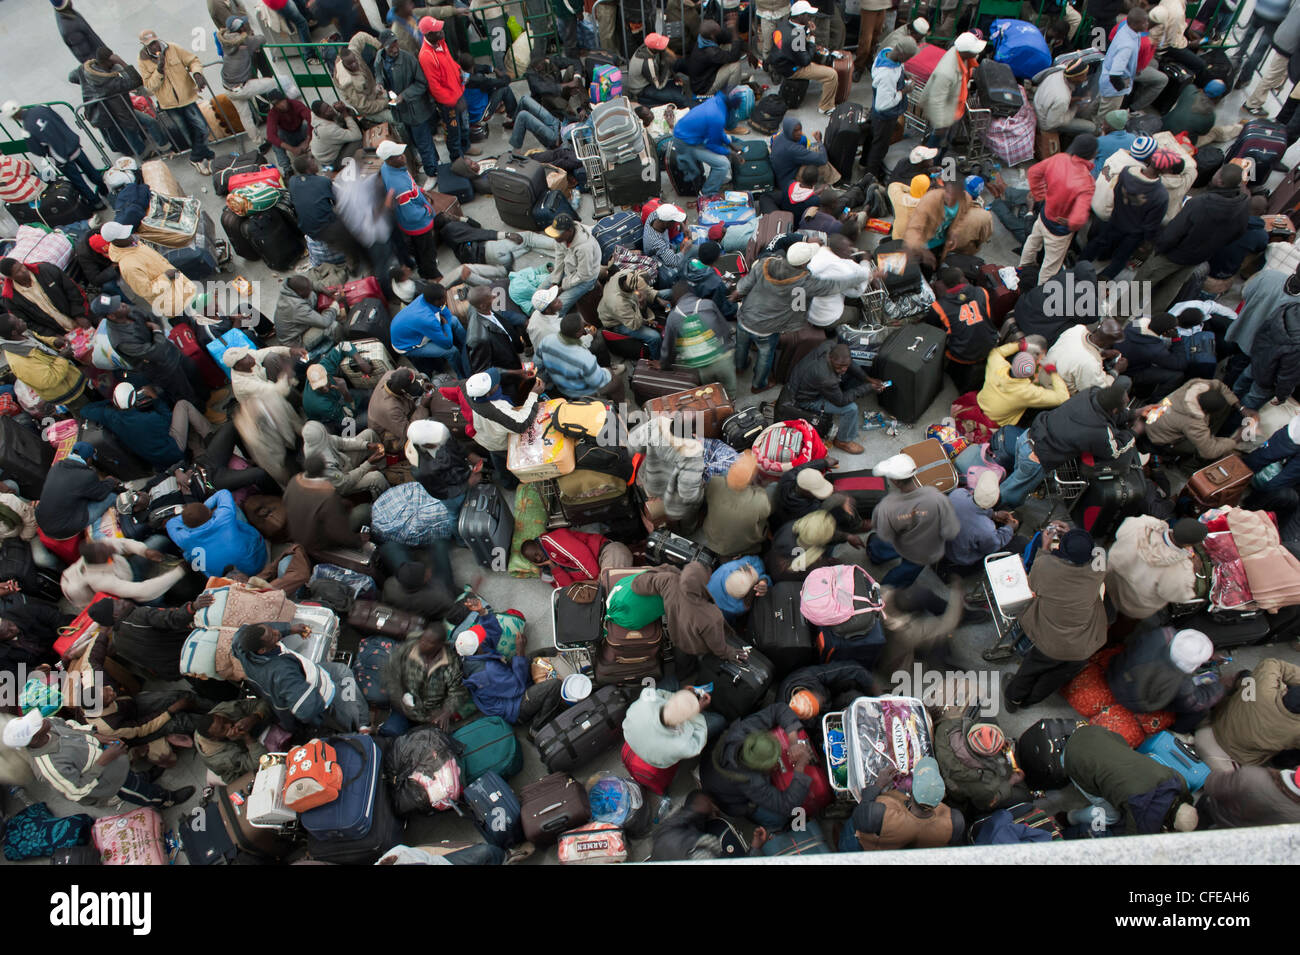 Flughafen Djerba. Tunesien. Rund 15.000 Flüchtlinge aus Libyen evakuiert Warten auf Flugzeuge mit nach Hause zu nehmen. 2011 Stockfoto